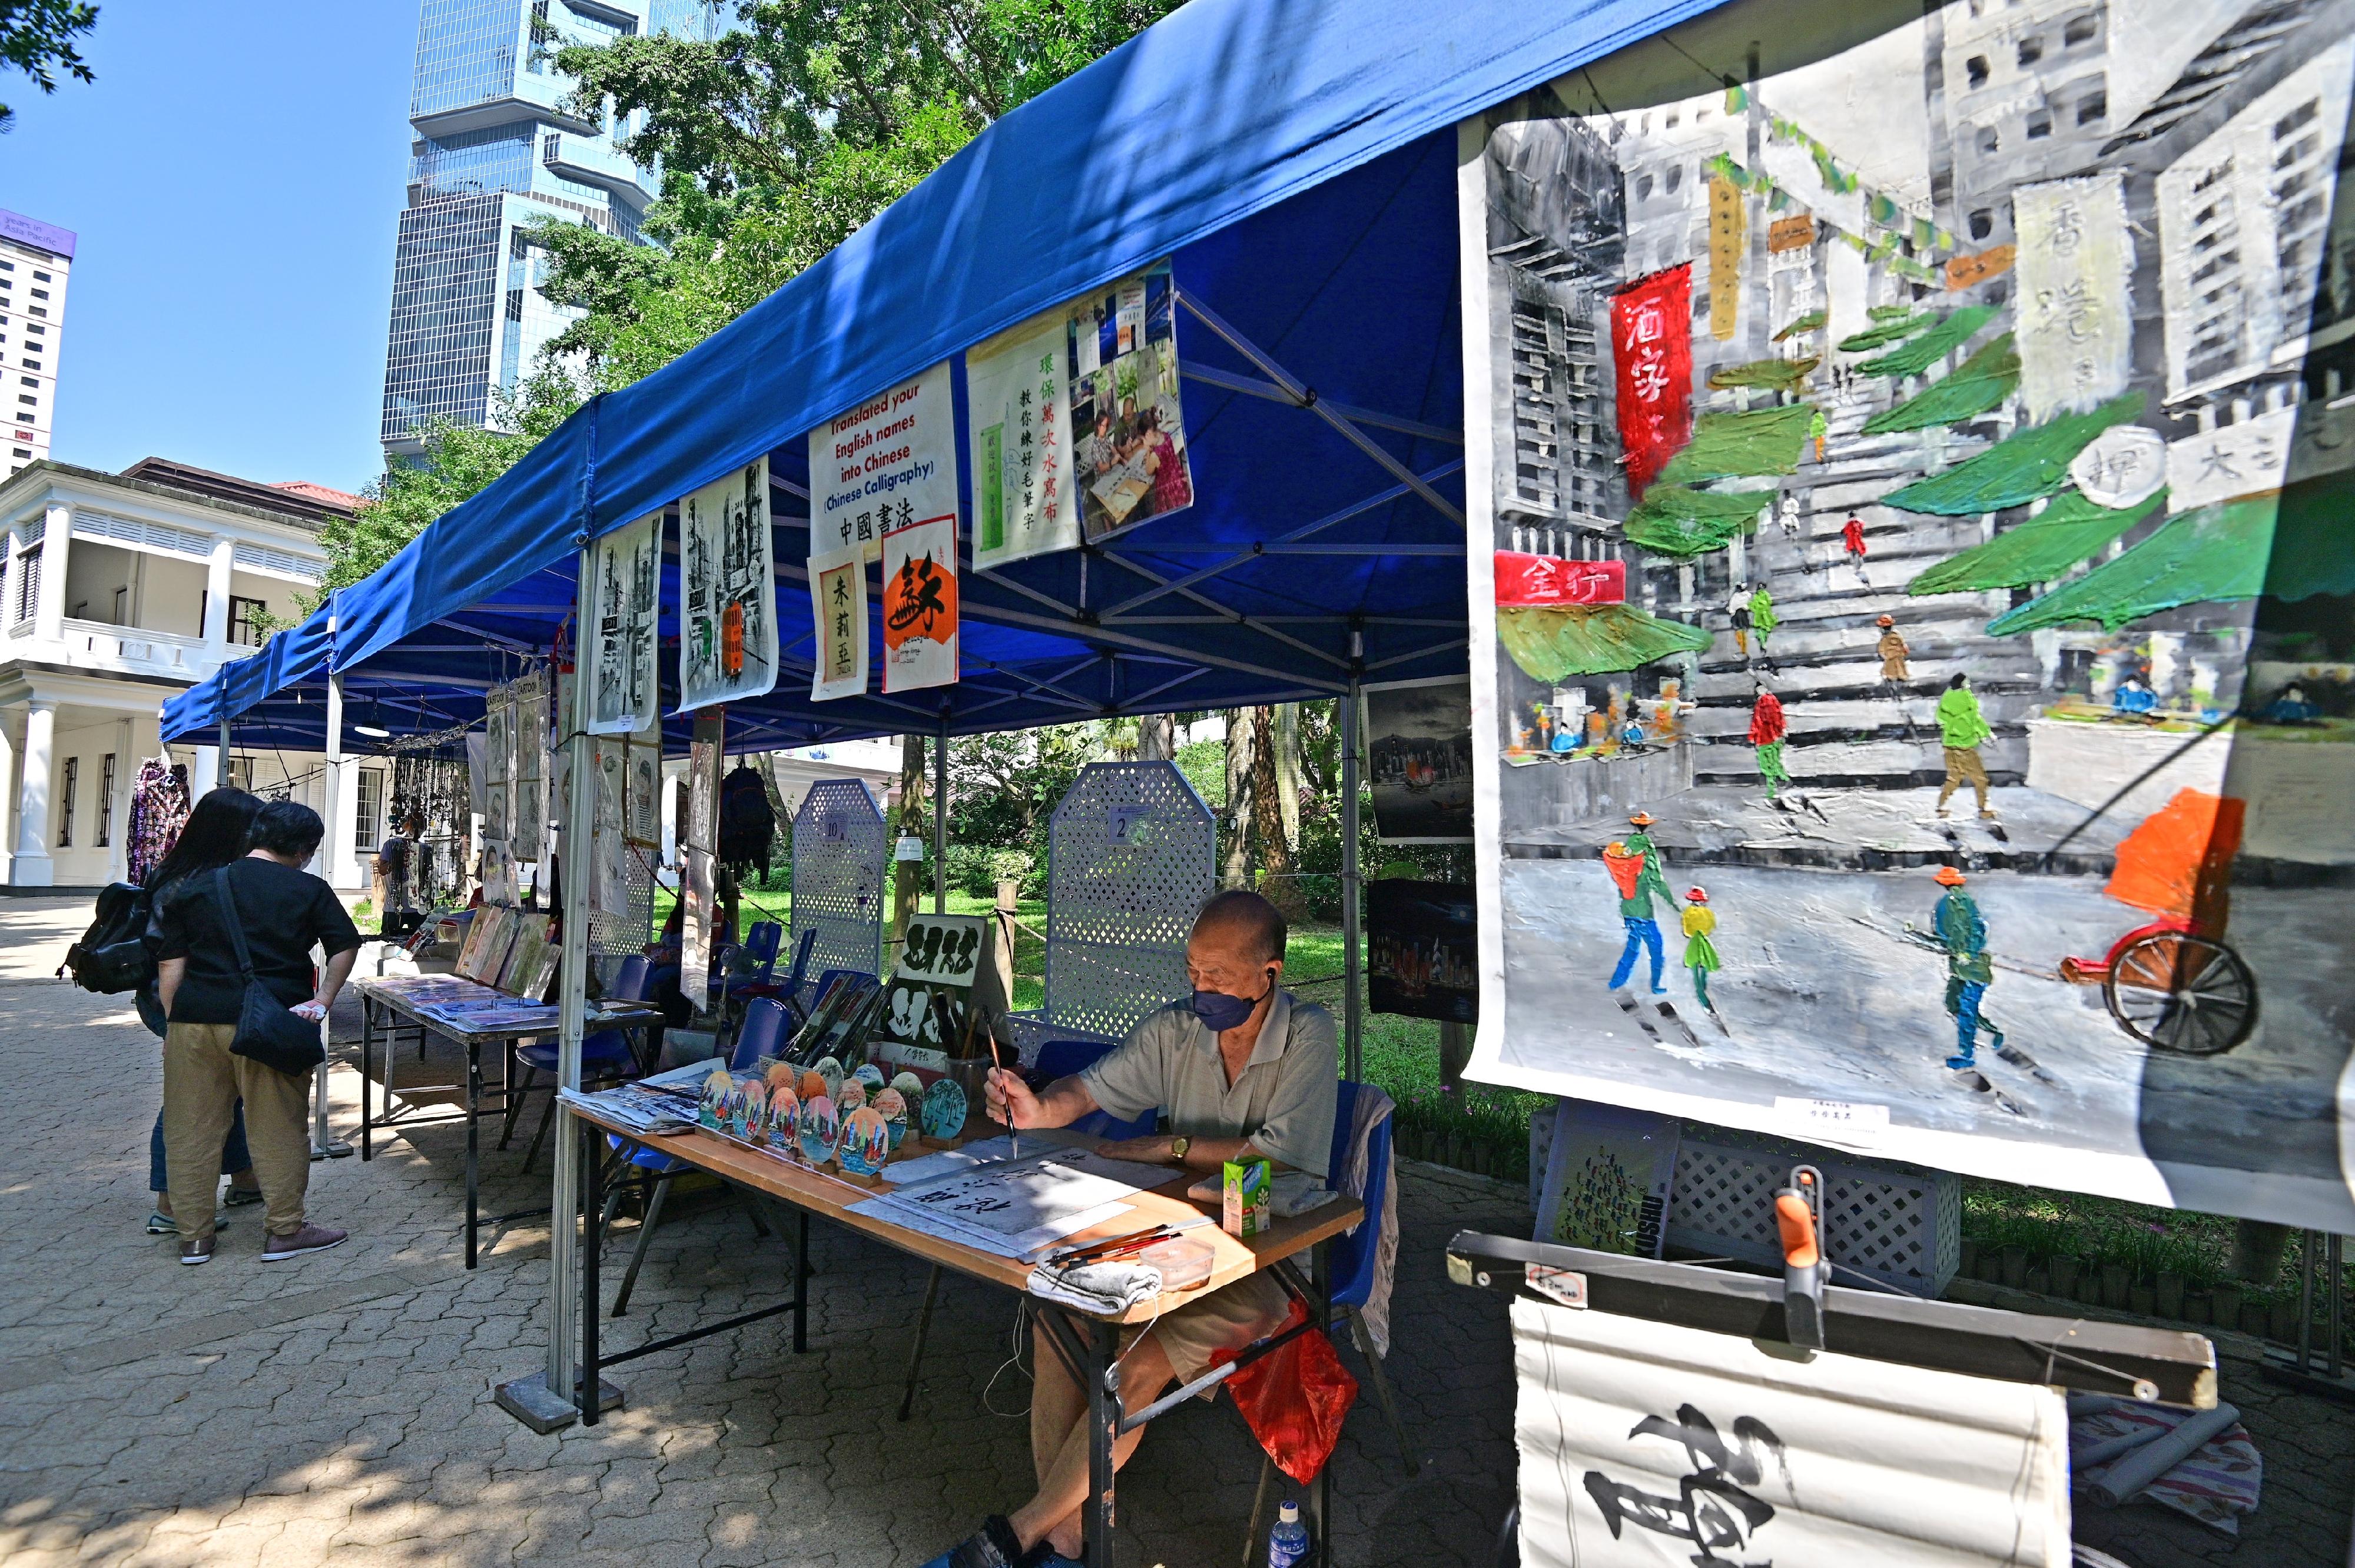 康樂及文化事務署邀請市民參與「藝趣坊」活動。活動於二○二三年一月一日至十二月三十一日期間逢星期六、日及公眾假期在香港公園舉行。場內設有十個攤位，展出及售賣各種精緻的手工藝品，例如布藝、花藝和飾物，亦提供繪畫、人像素描、書法和攝影等服務。